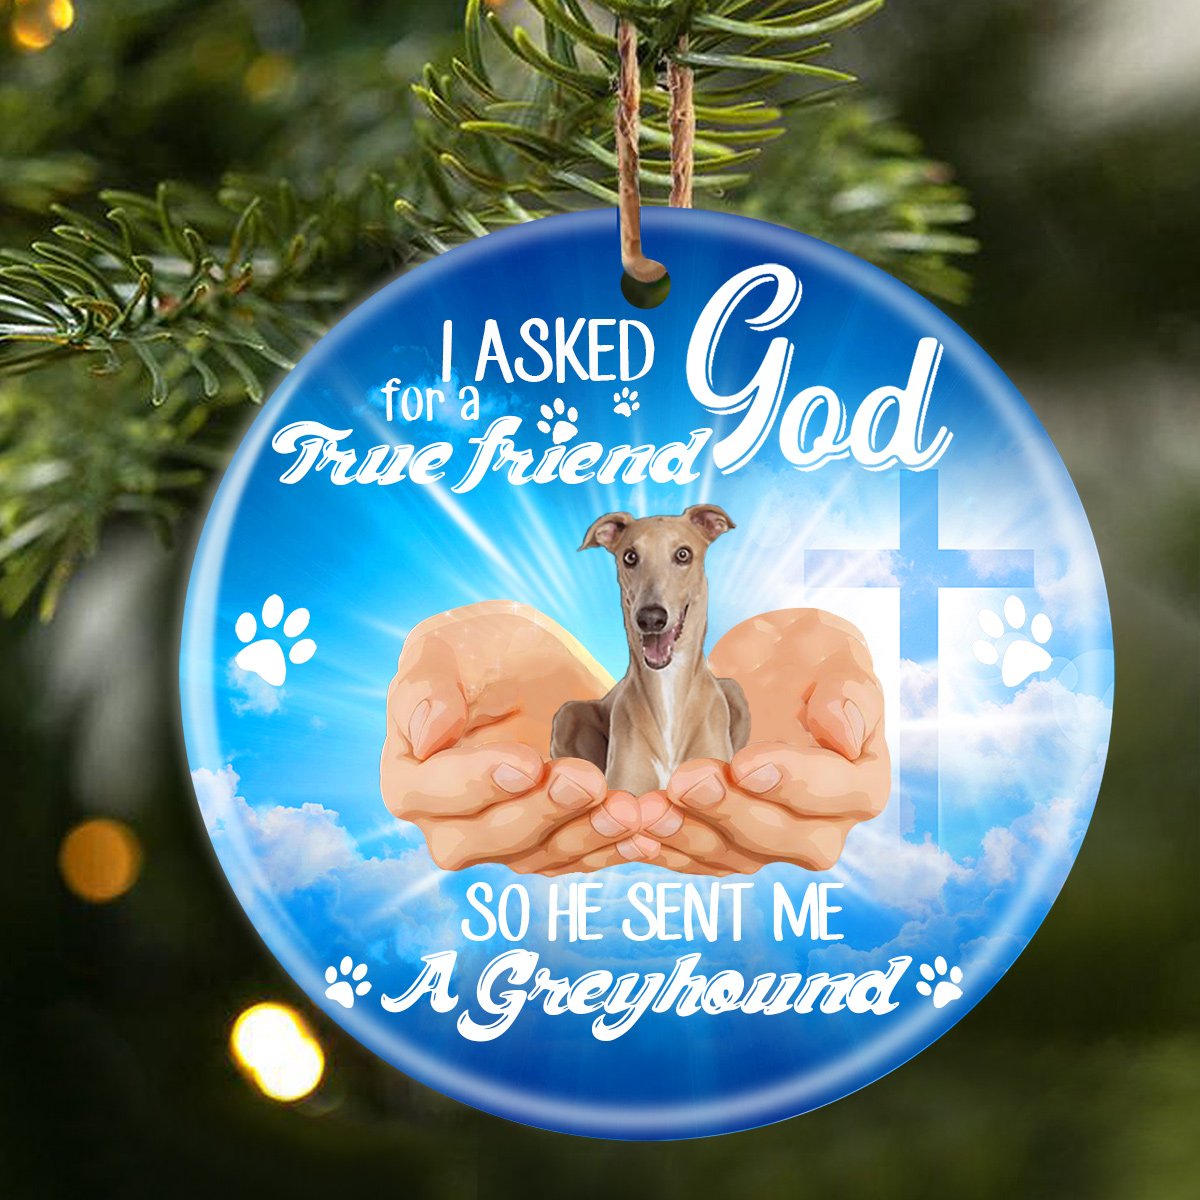 God Send Me A/An Greyhound Porcelain/Ceramic Ornament